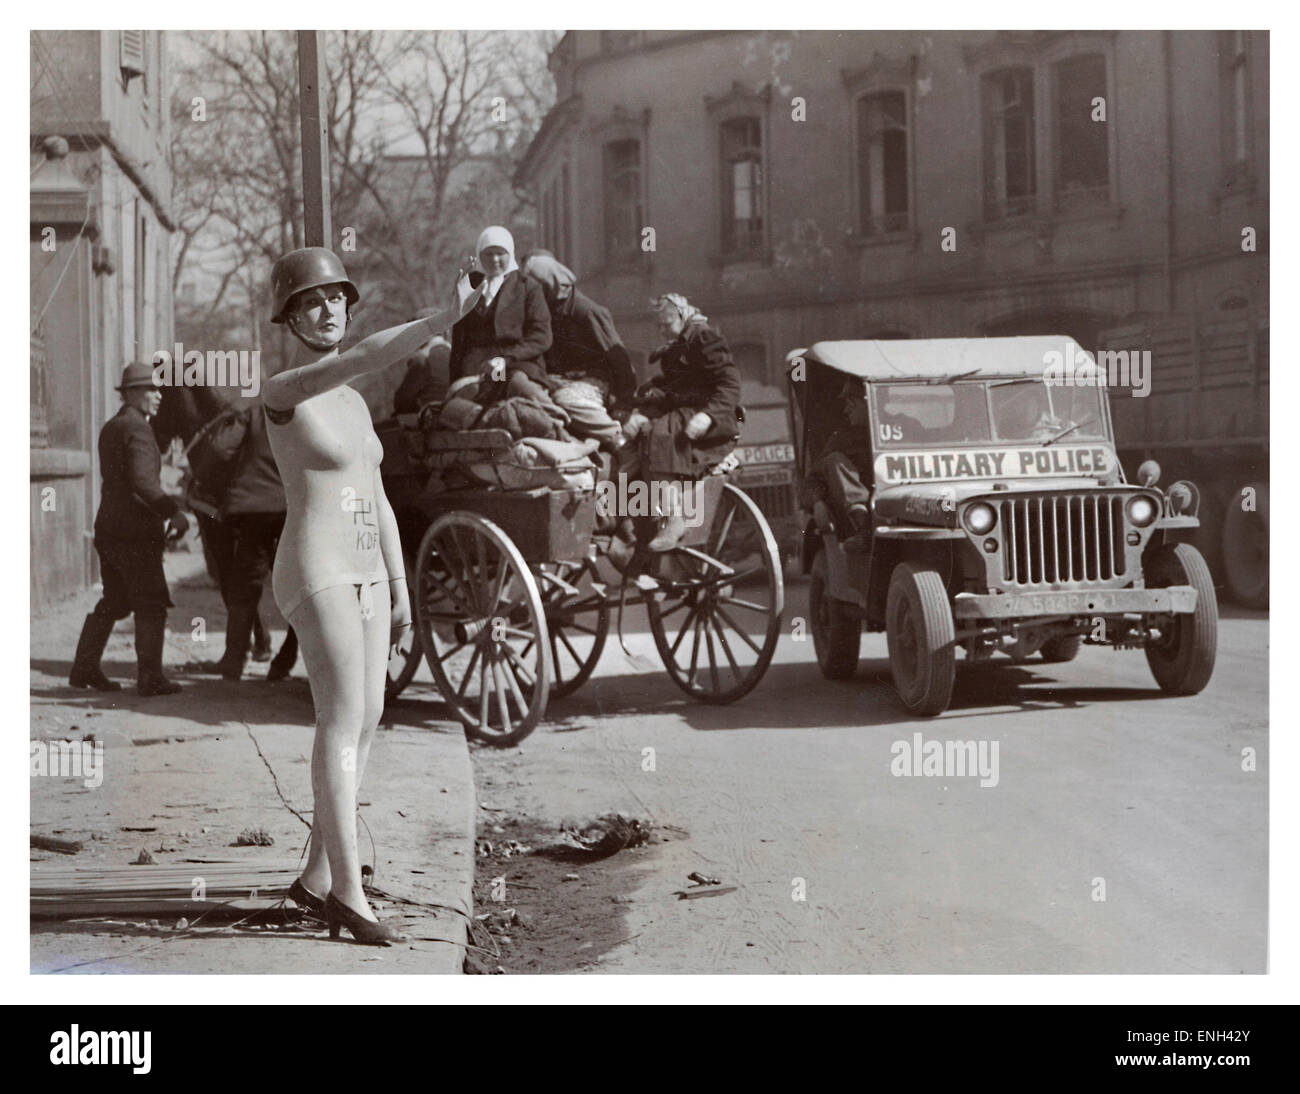 Berlín ocupada WW2 humor imagen oscura en la post guerra de 1945 de Berlín el paují tienda maniqui dando saludo hitleriano con jeep americano y refugiados detrás Foto de stock